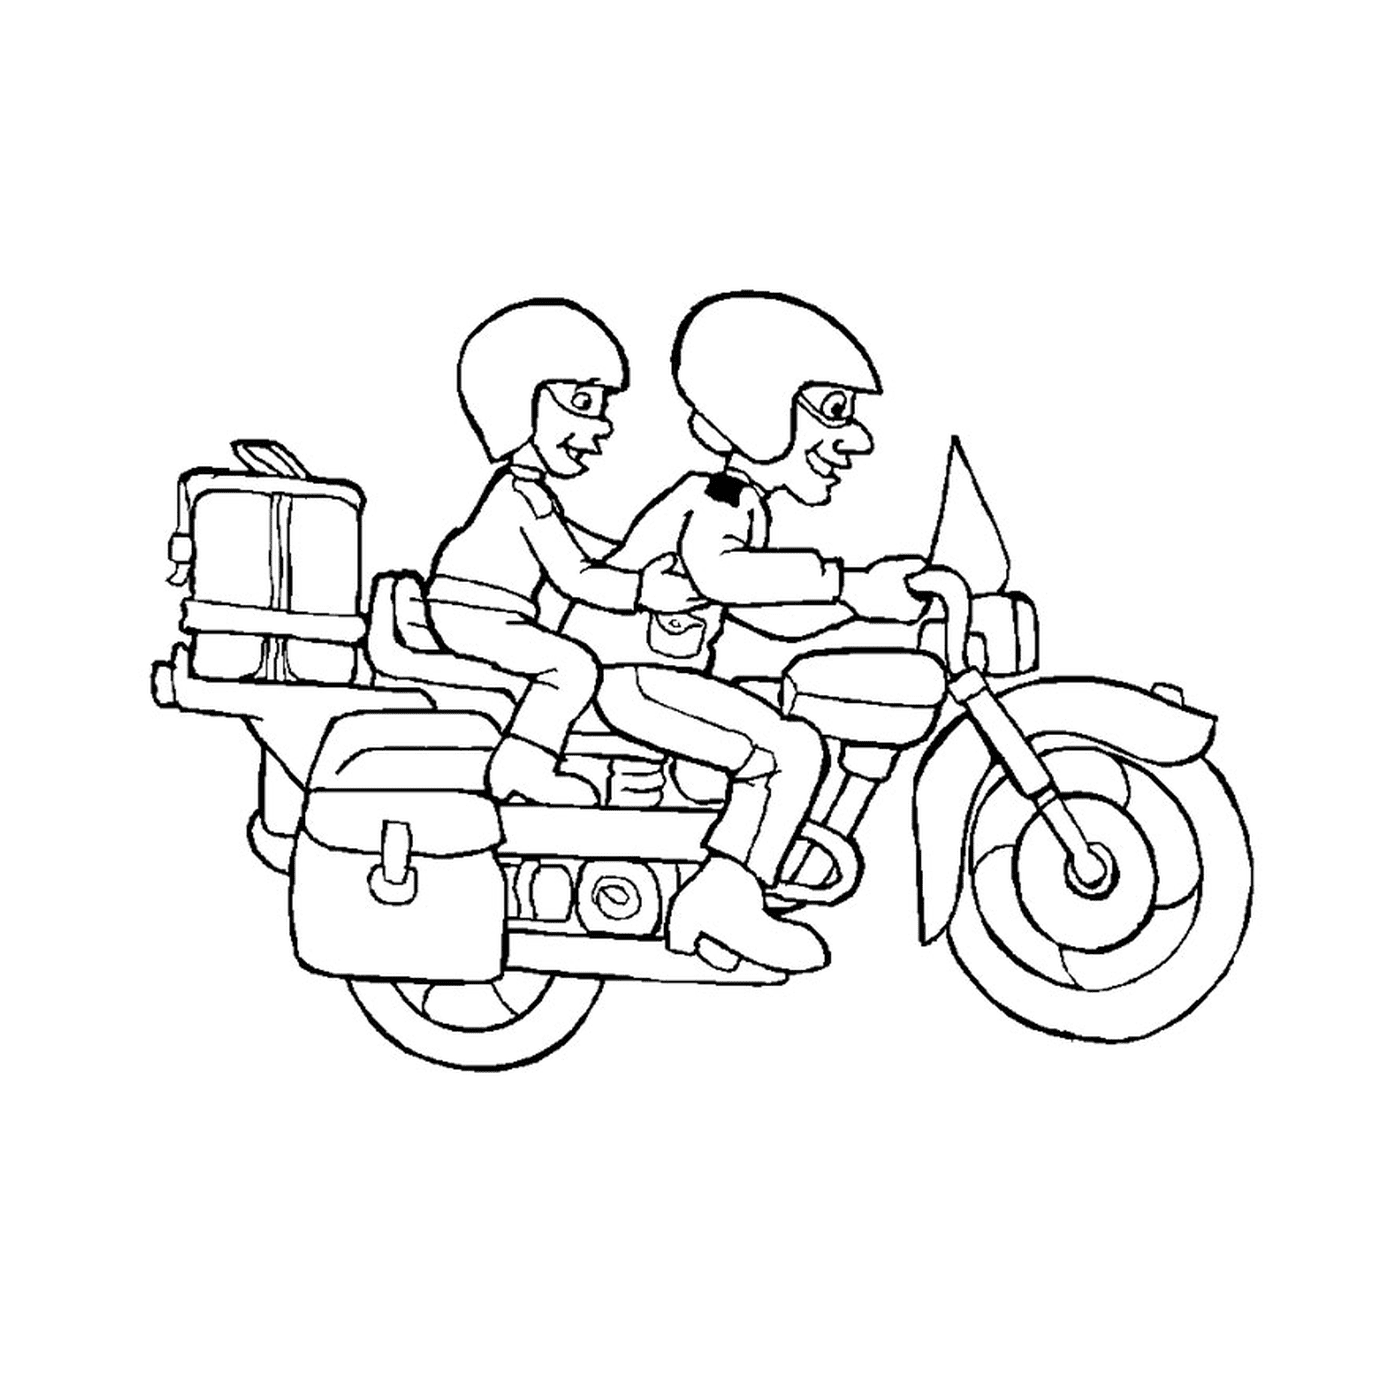  zwei Personen auf Motorrädern 